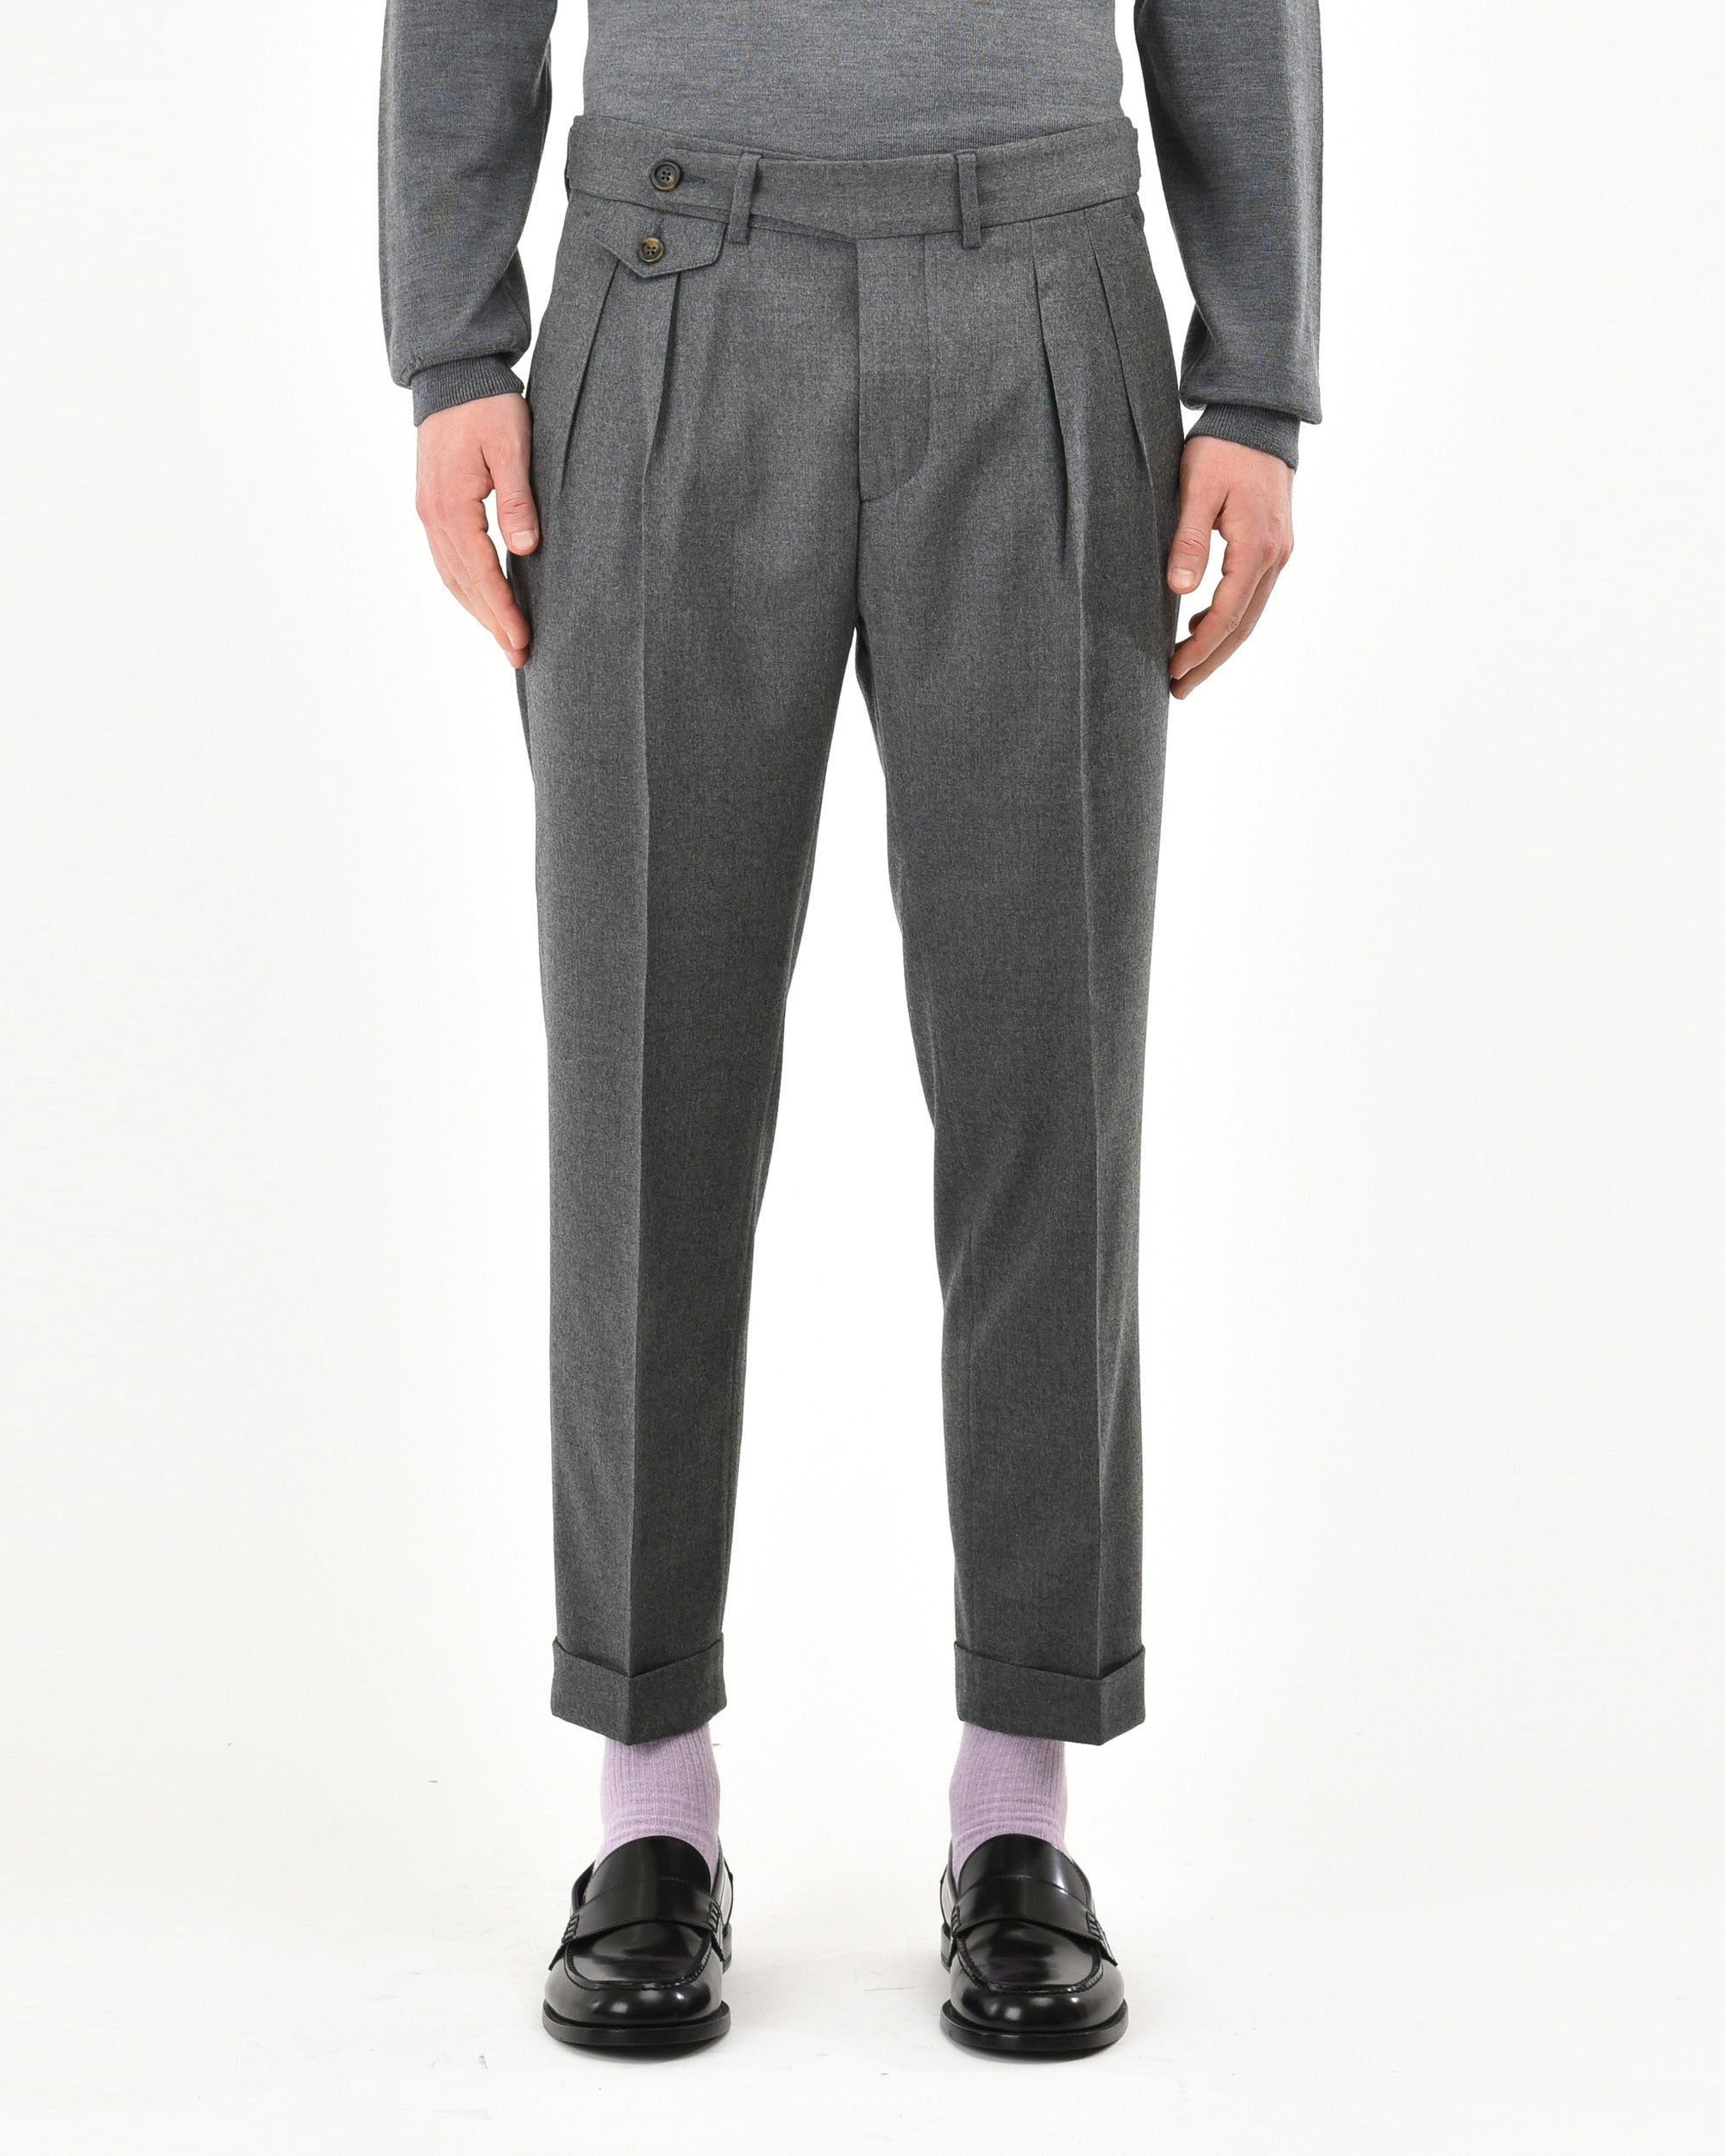 Pantalone doppia pinces baggy flanella di lana stretch grigio ...